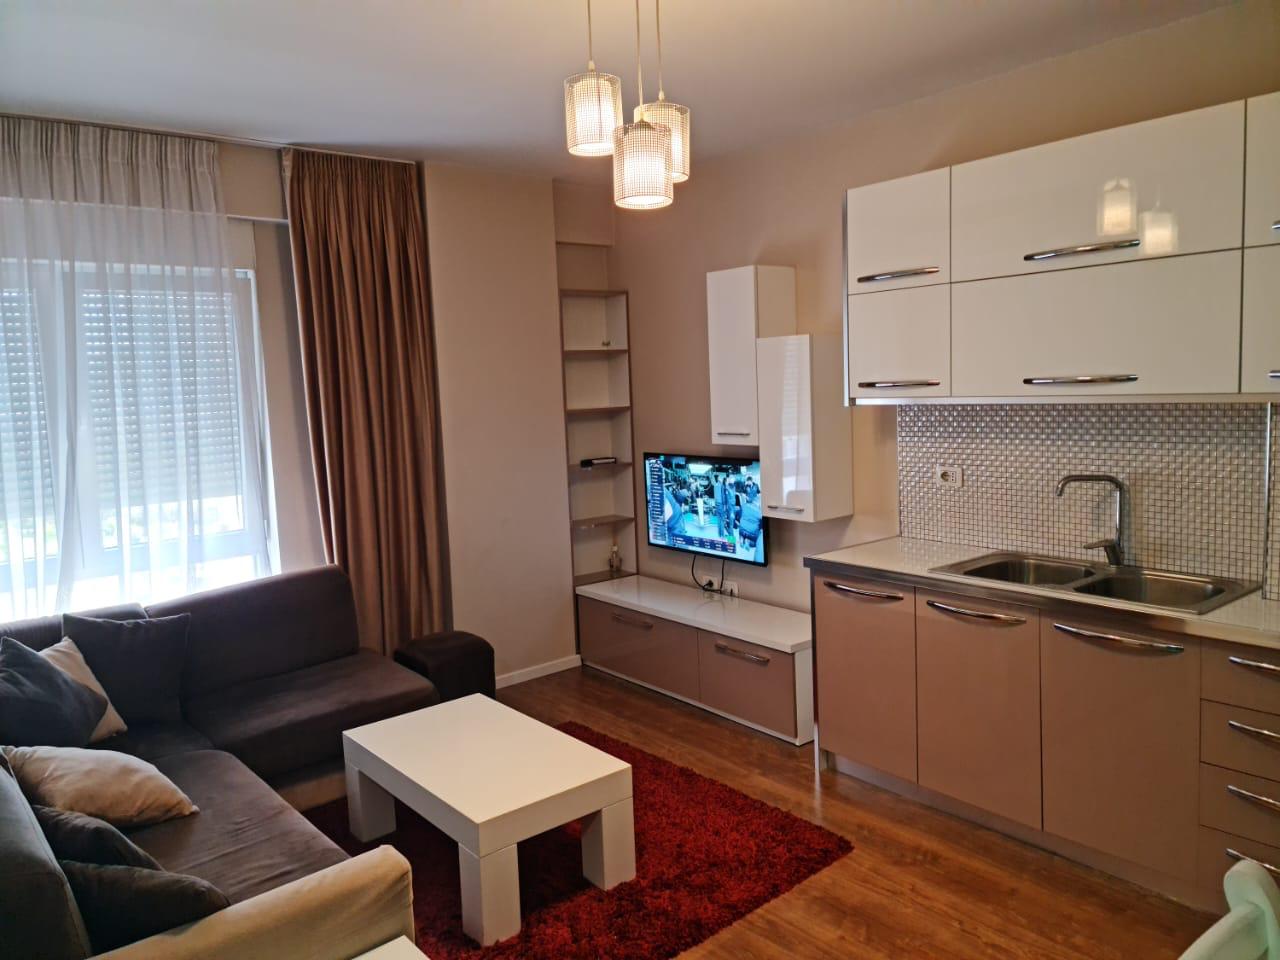 Qera, Apartament 1+1 Kompleksi Kontakt, 21 Dhjetori Tiranë